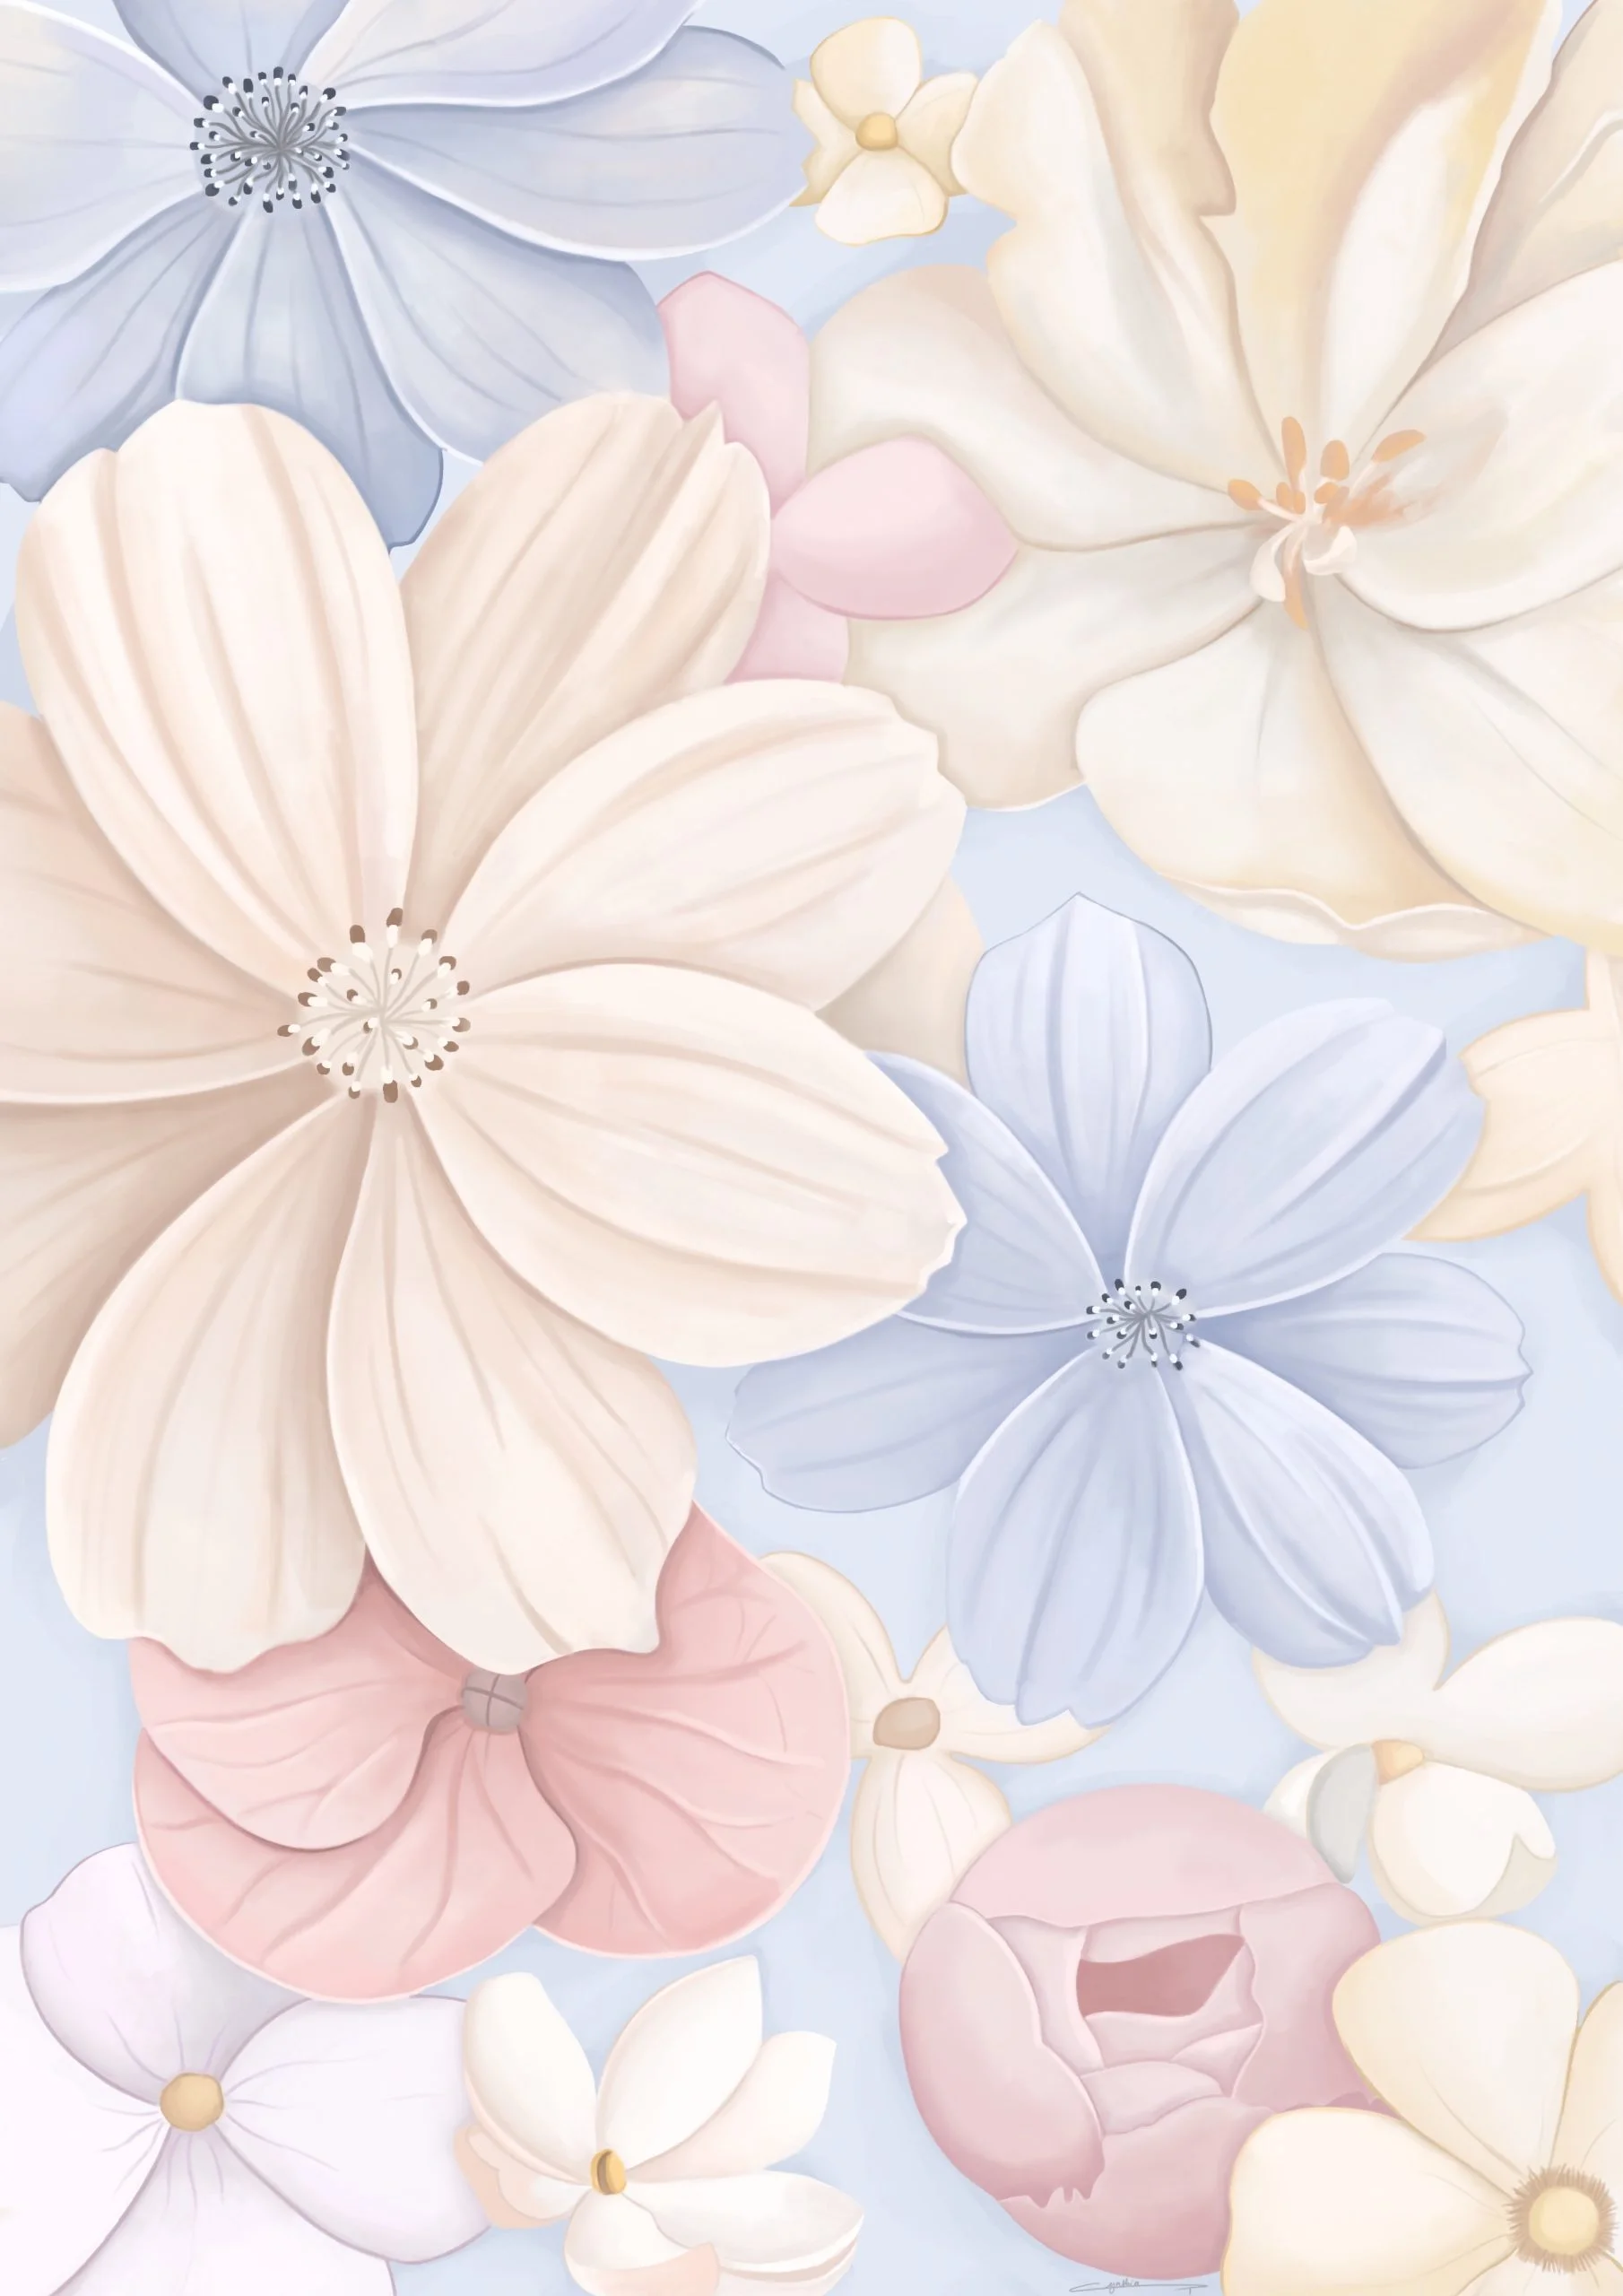 dessin de fleurs blanches, bleues et roses